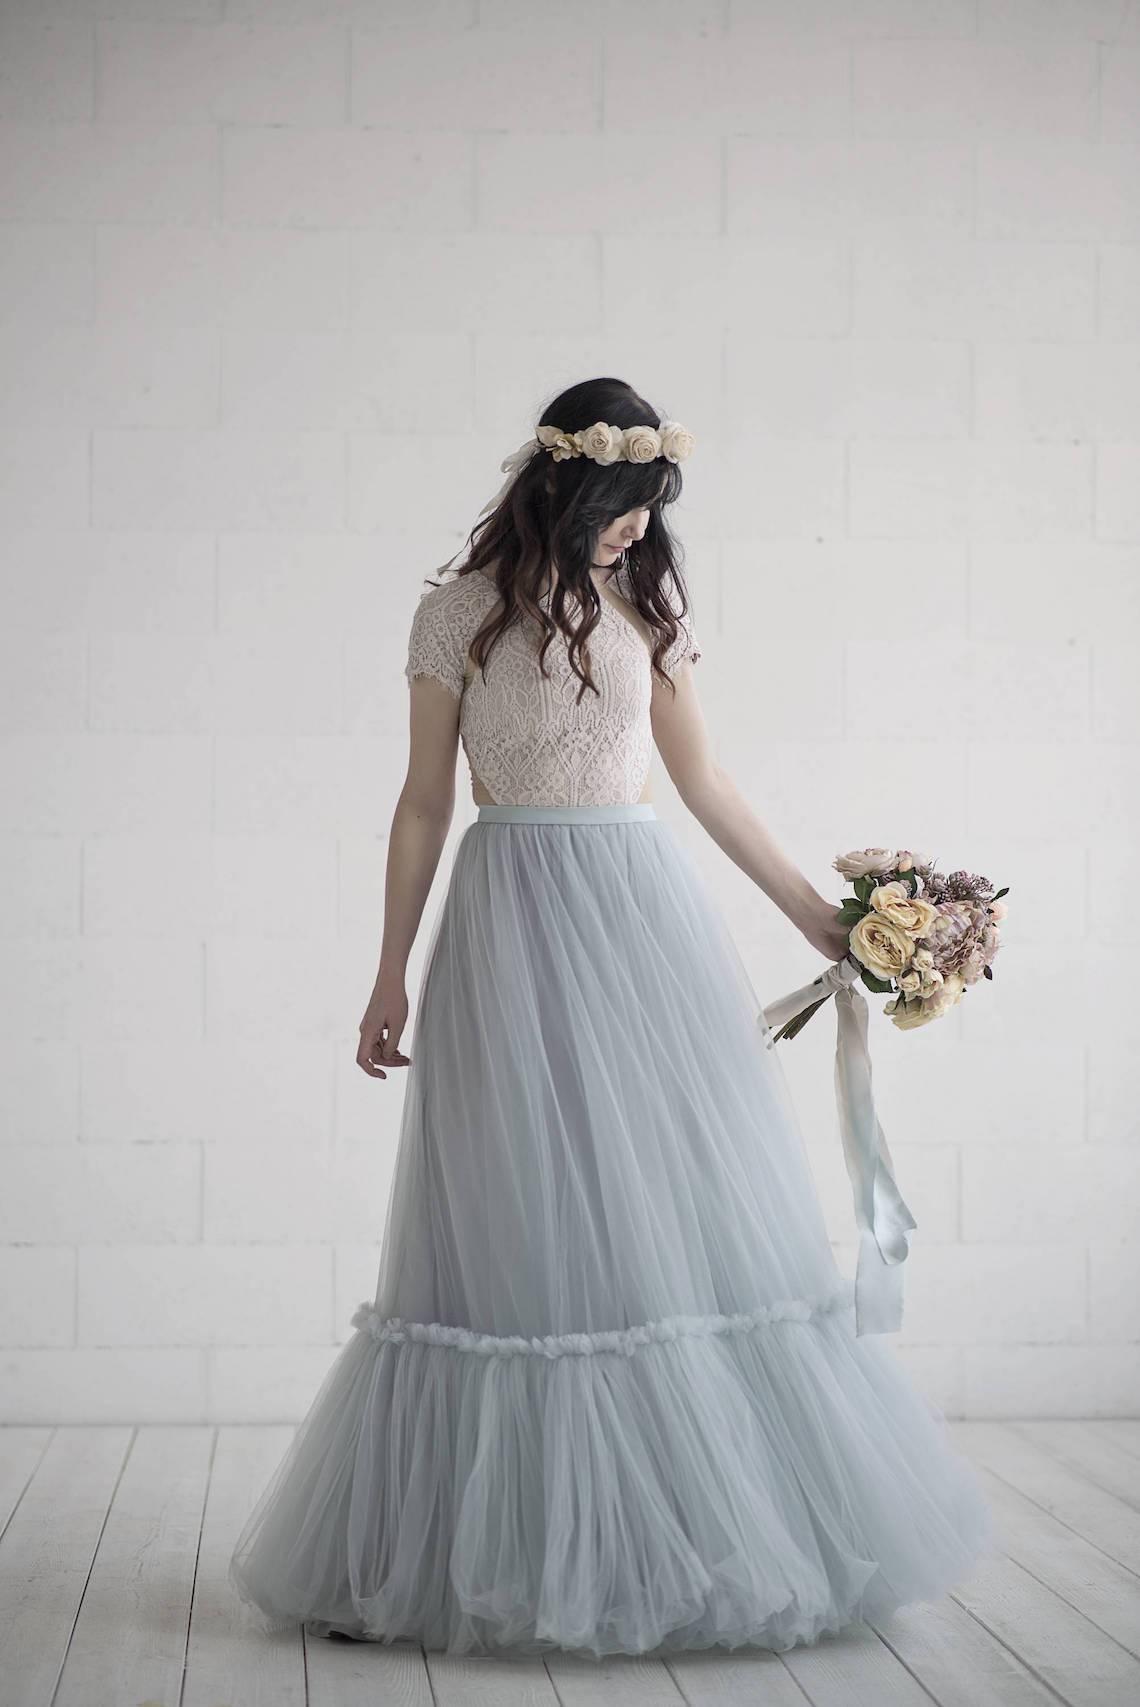 Bridal Separates Wedding Dresses for Every Style of Bride on Etsy Wardrobe by Dulcinea Blue Tulle Two Piece Wedding Dress - 35 chiếc váy cưới riêng biệt cho mọi phong cách của cô dâu